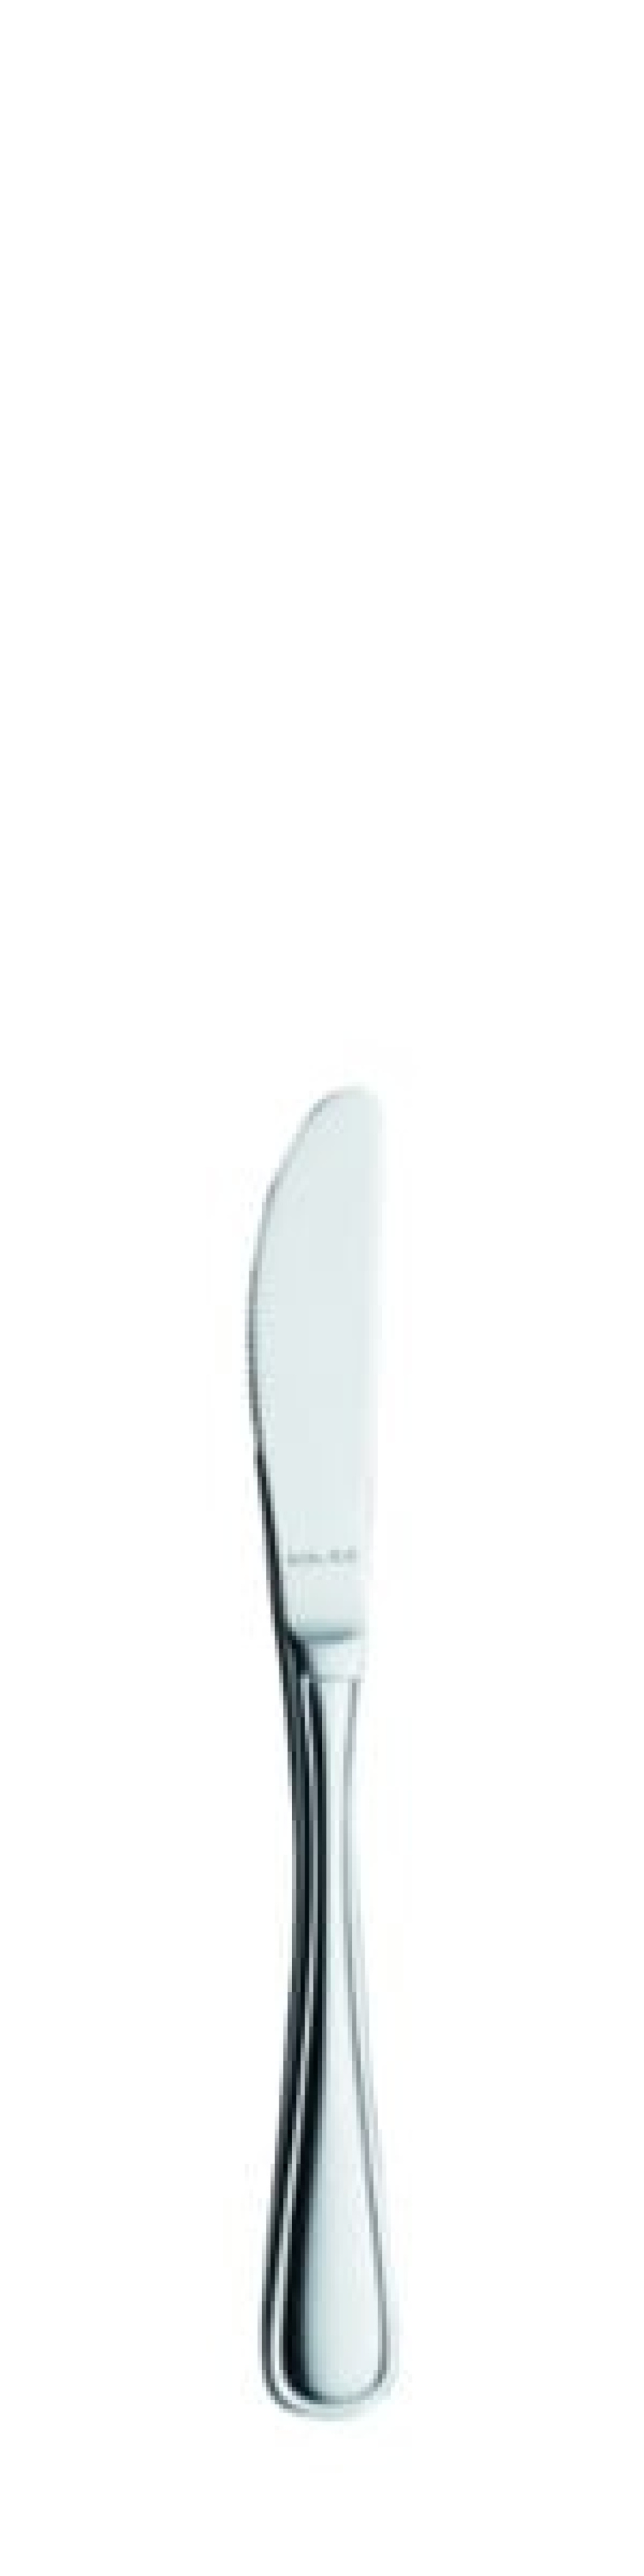 Nóż do masła Selina 170 mm - Solex w grupie Nakrycie stołu / Sztućce / Noże do masła w The Kitchen Lab (1284-21524)